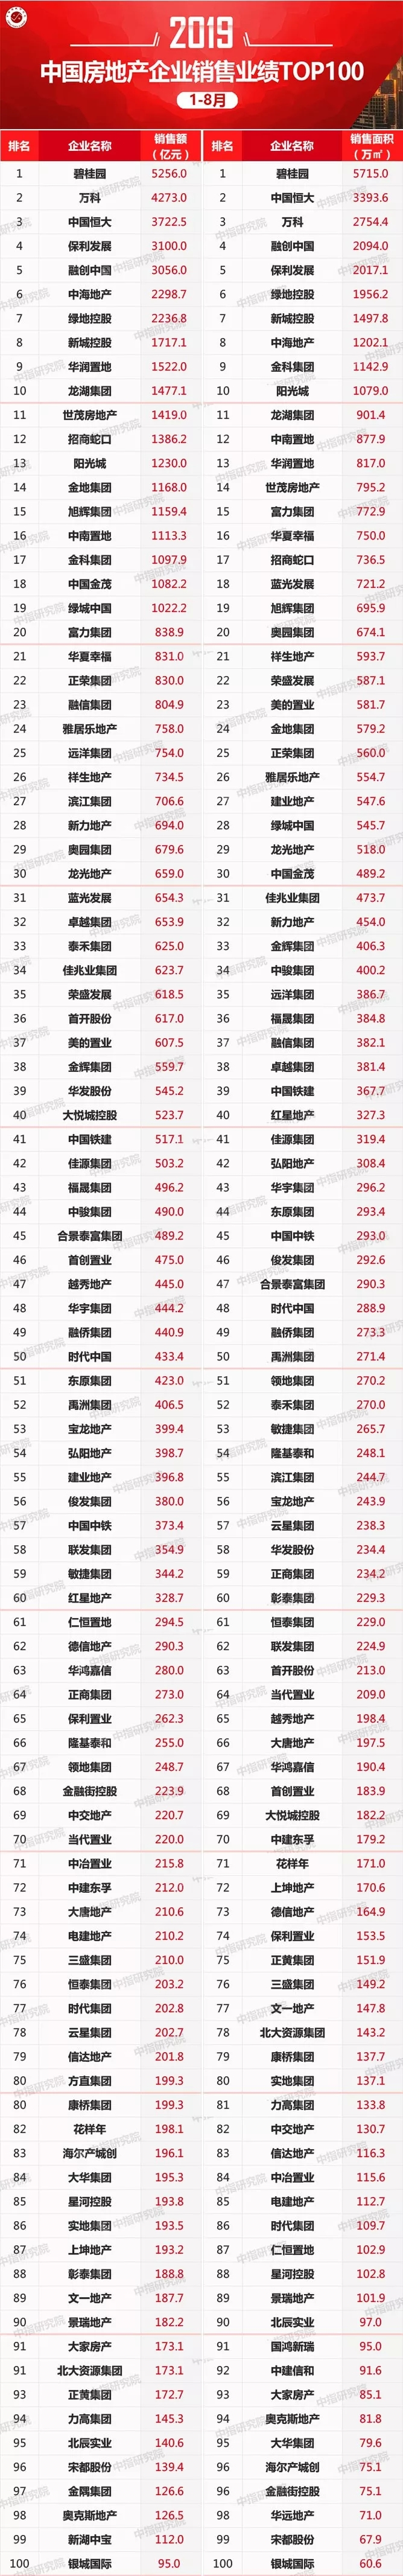 2019年1-8月中国房地产企业销售业绩100